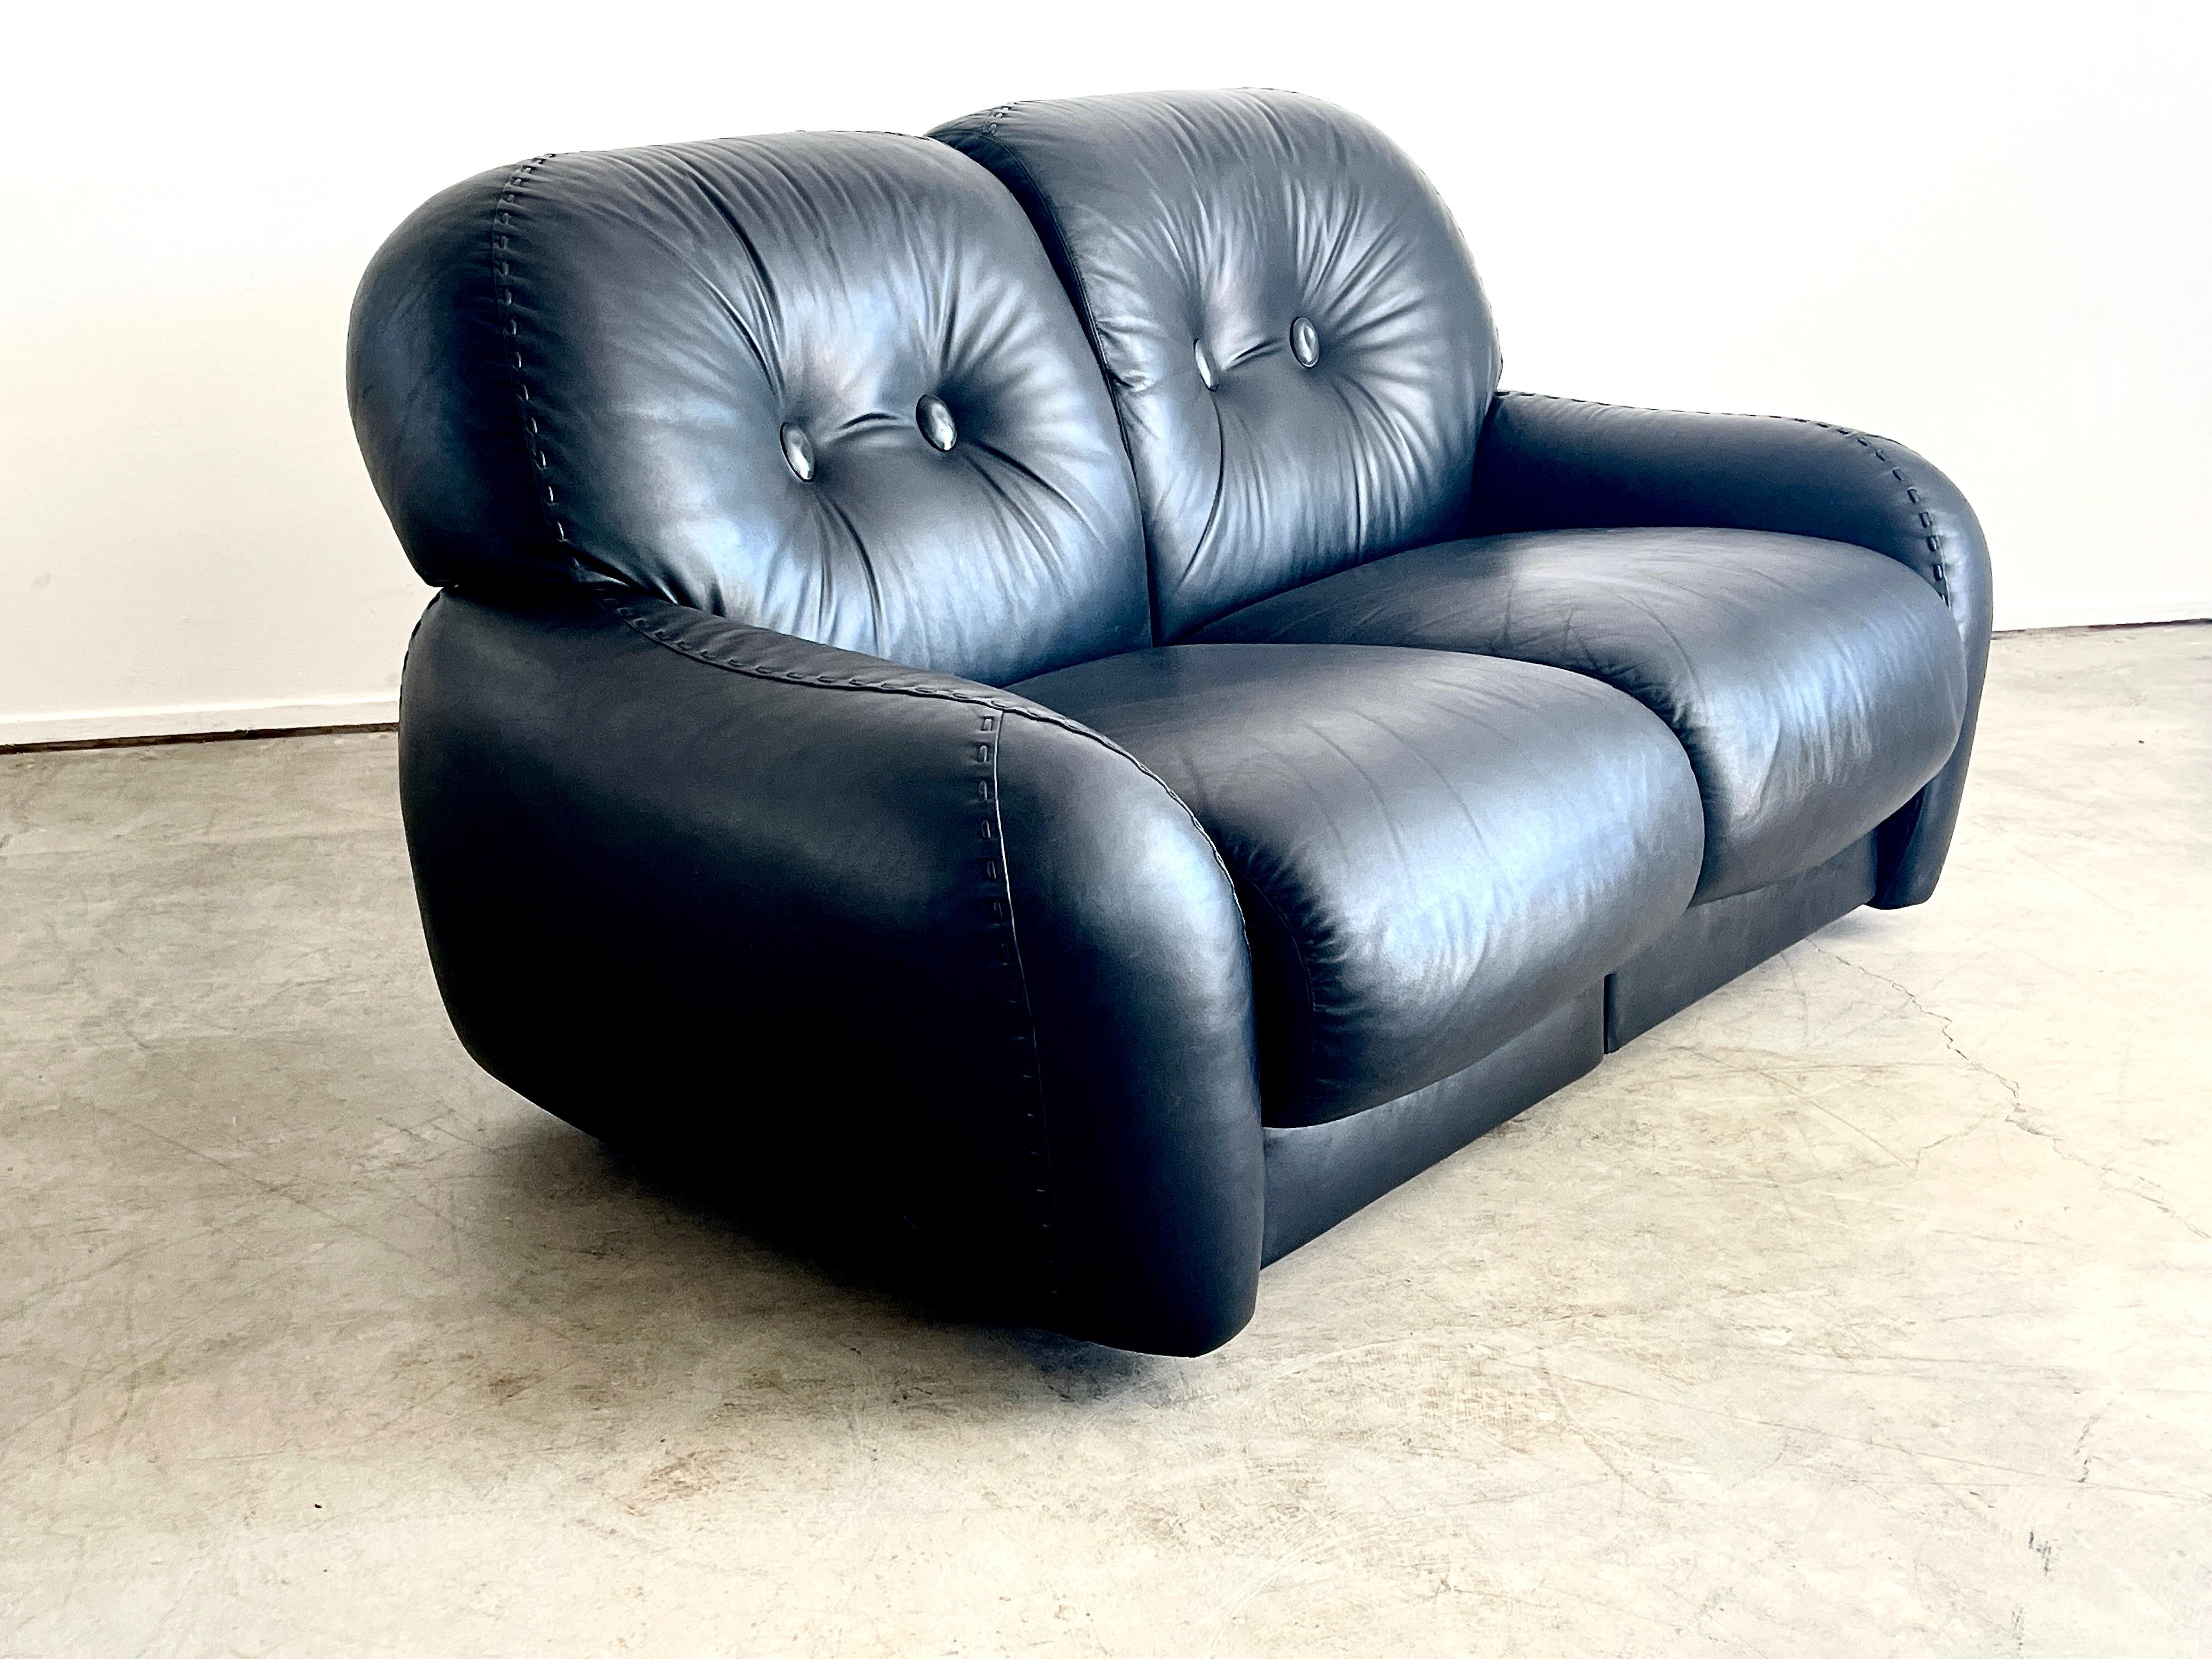 Canapé en cuir italien par ADRIANO PIAZZESI, vers les années 1960.
Fait partie d'un ensemble comprenant un canapé 4 places assorti et une paire de fauteuils club avec ottoman.
 (vendu séparément) 
Superbe cuir noir d'origine avec 2 sièges qui ont